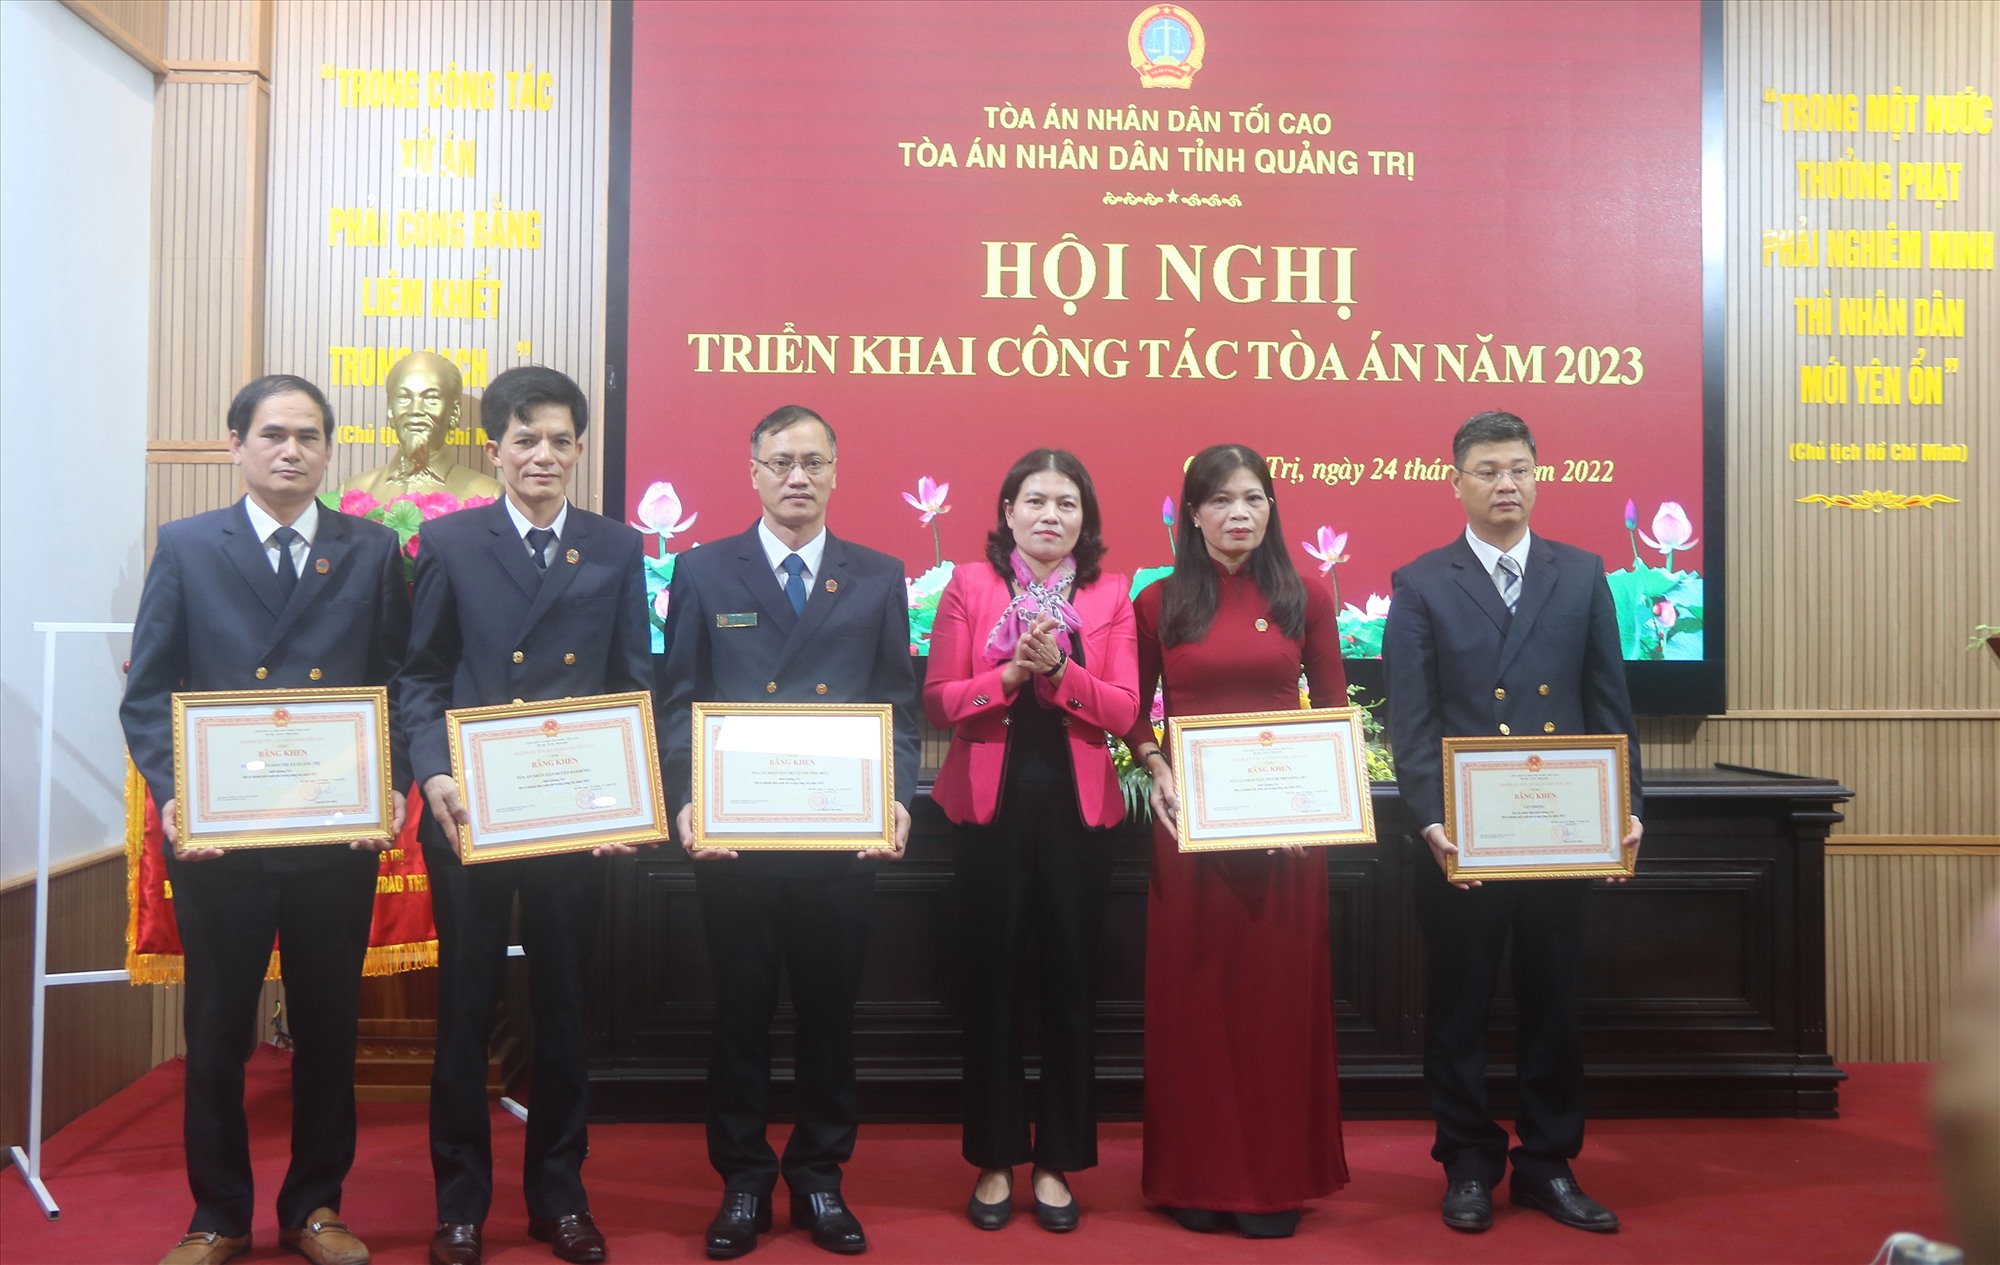 Trưởng Ban Nội chính Tỉnh ủy Ly Kiều Vân trao bằng khen của Chánh án Toà án nhân dân Tối cao cho các tập thể đạt thành tích cao trong công tác tòa án - Ảnh: N.B